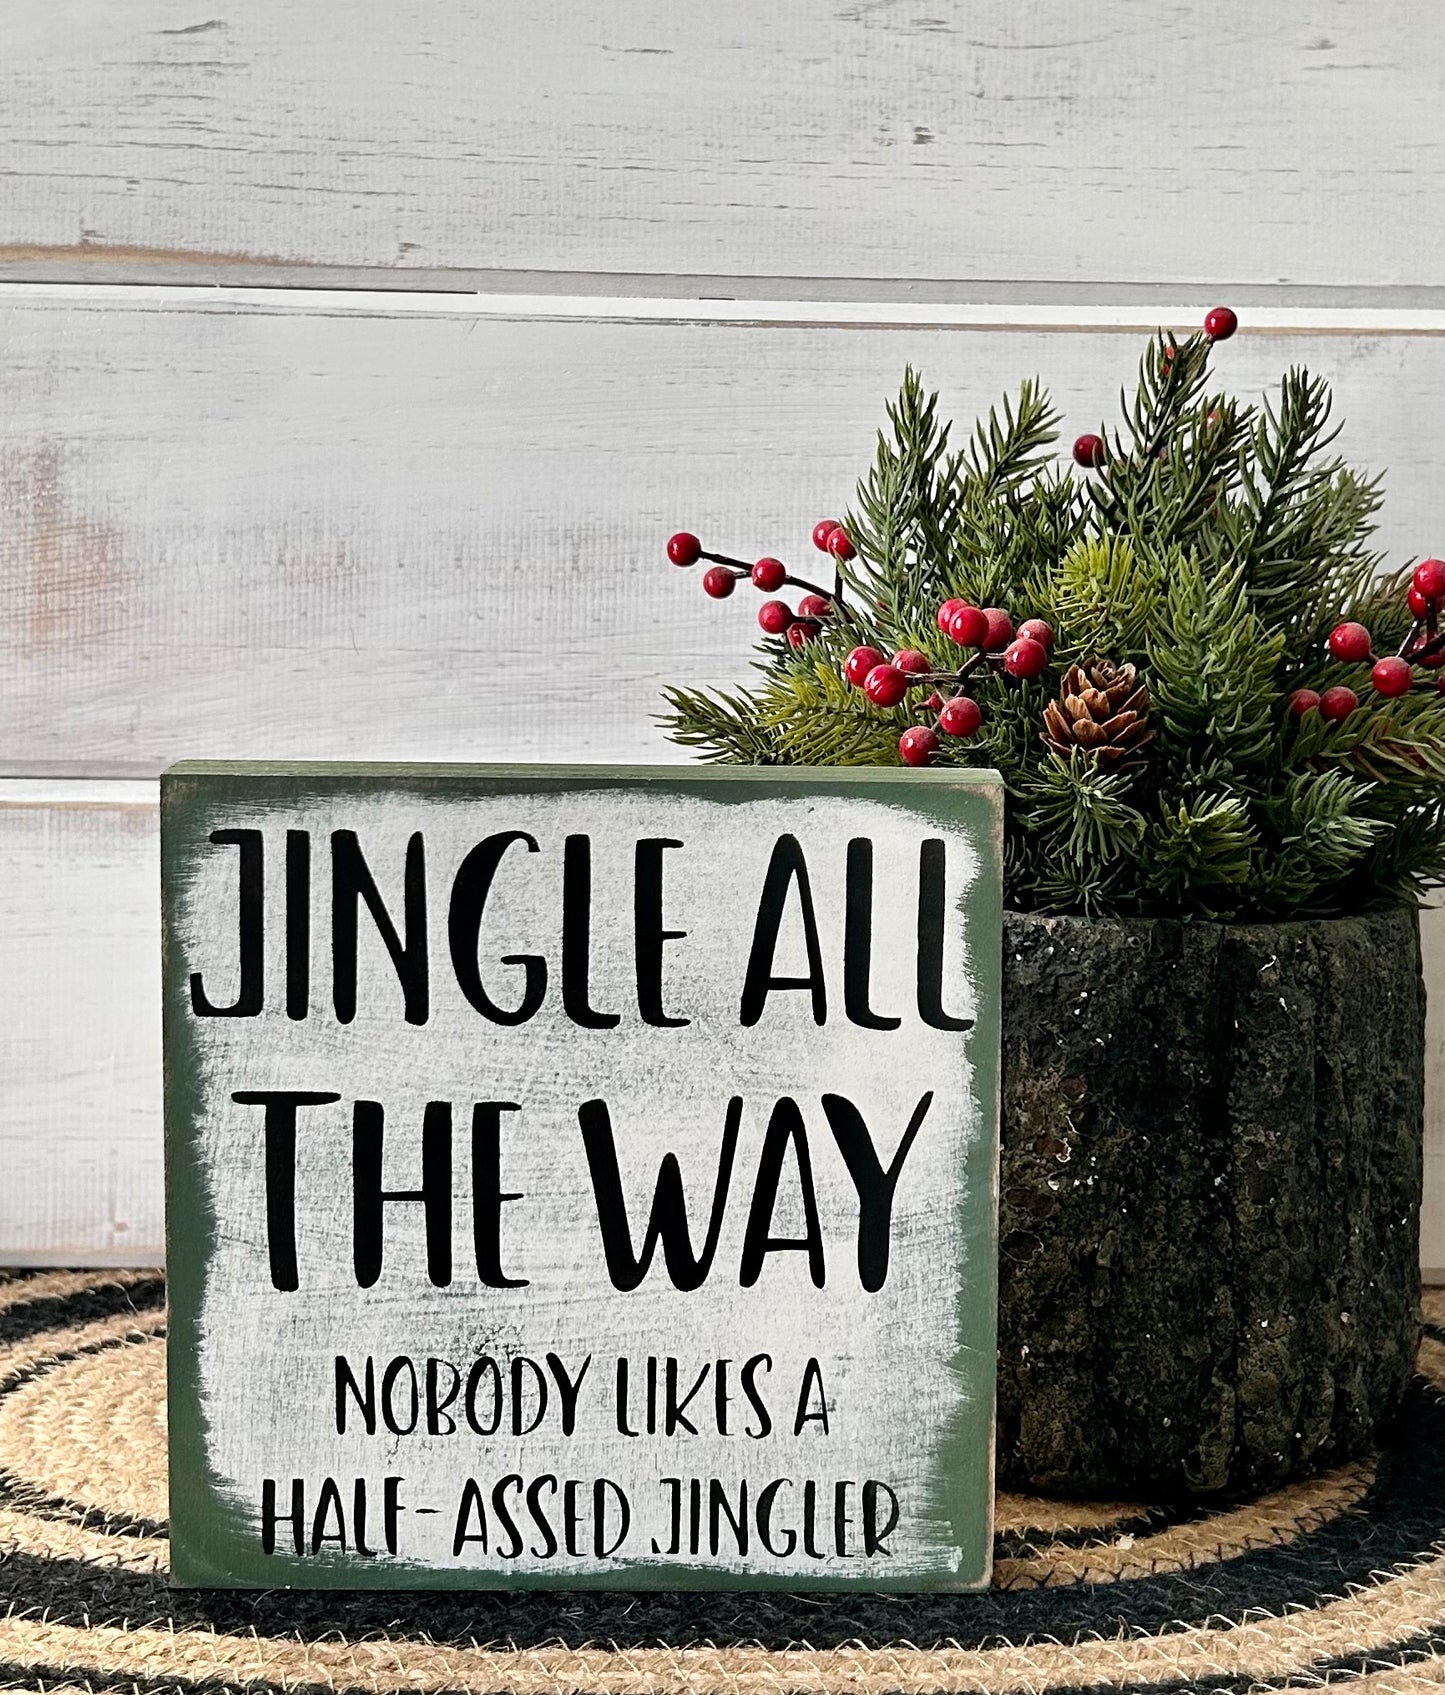 Jingle All The Way - Funny Christmas Wood Sign